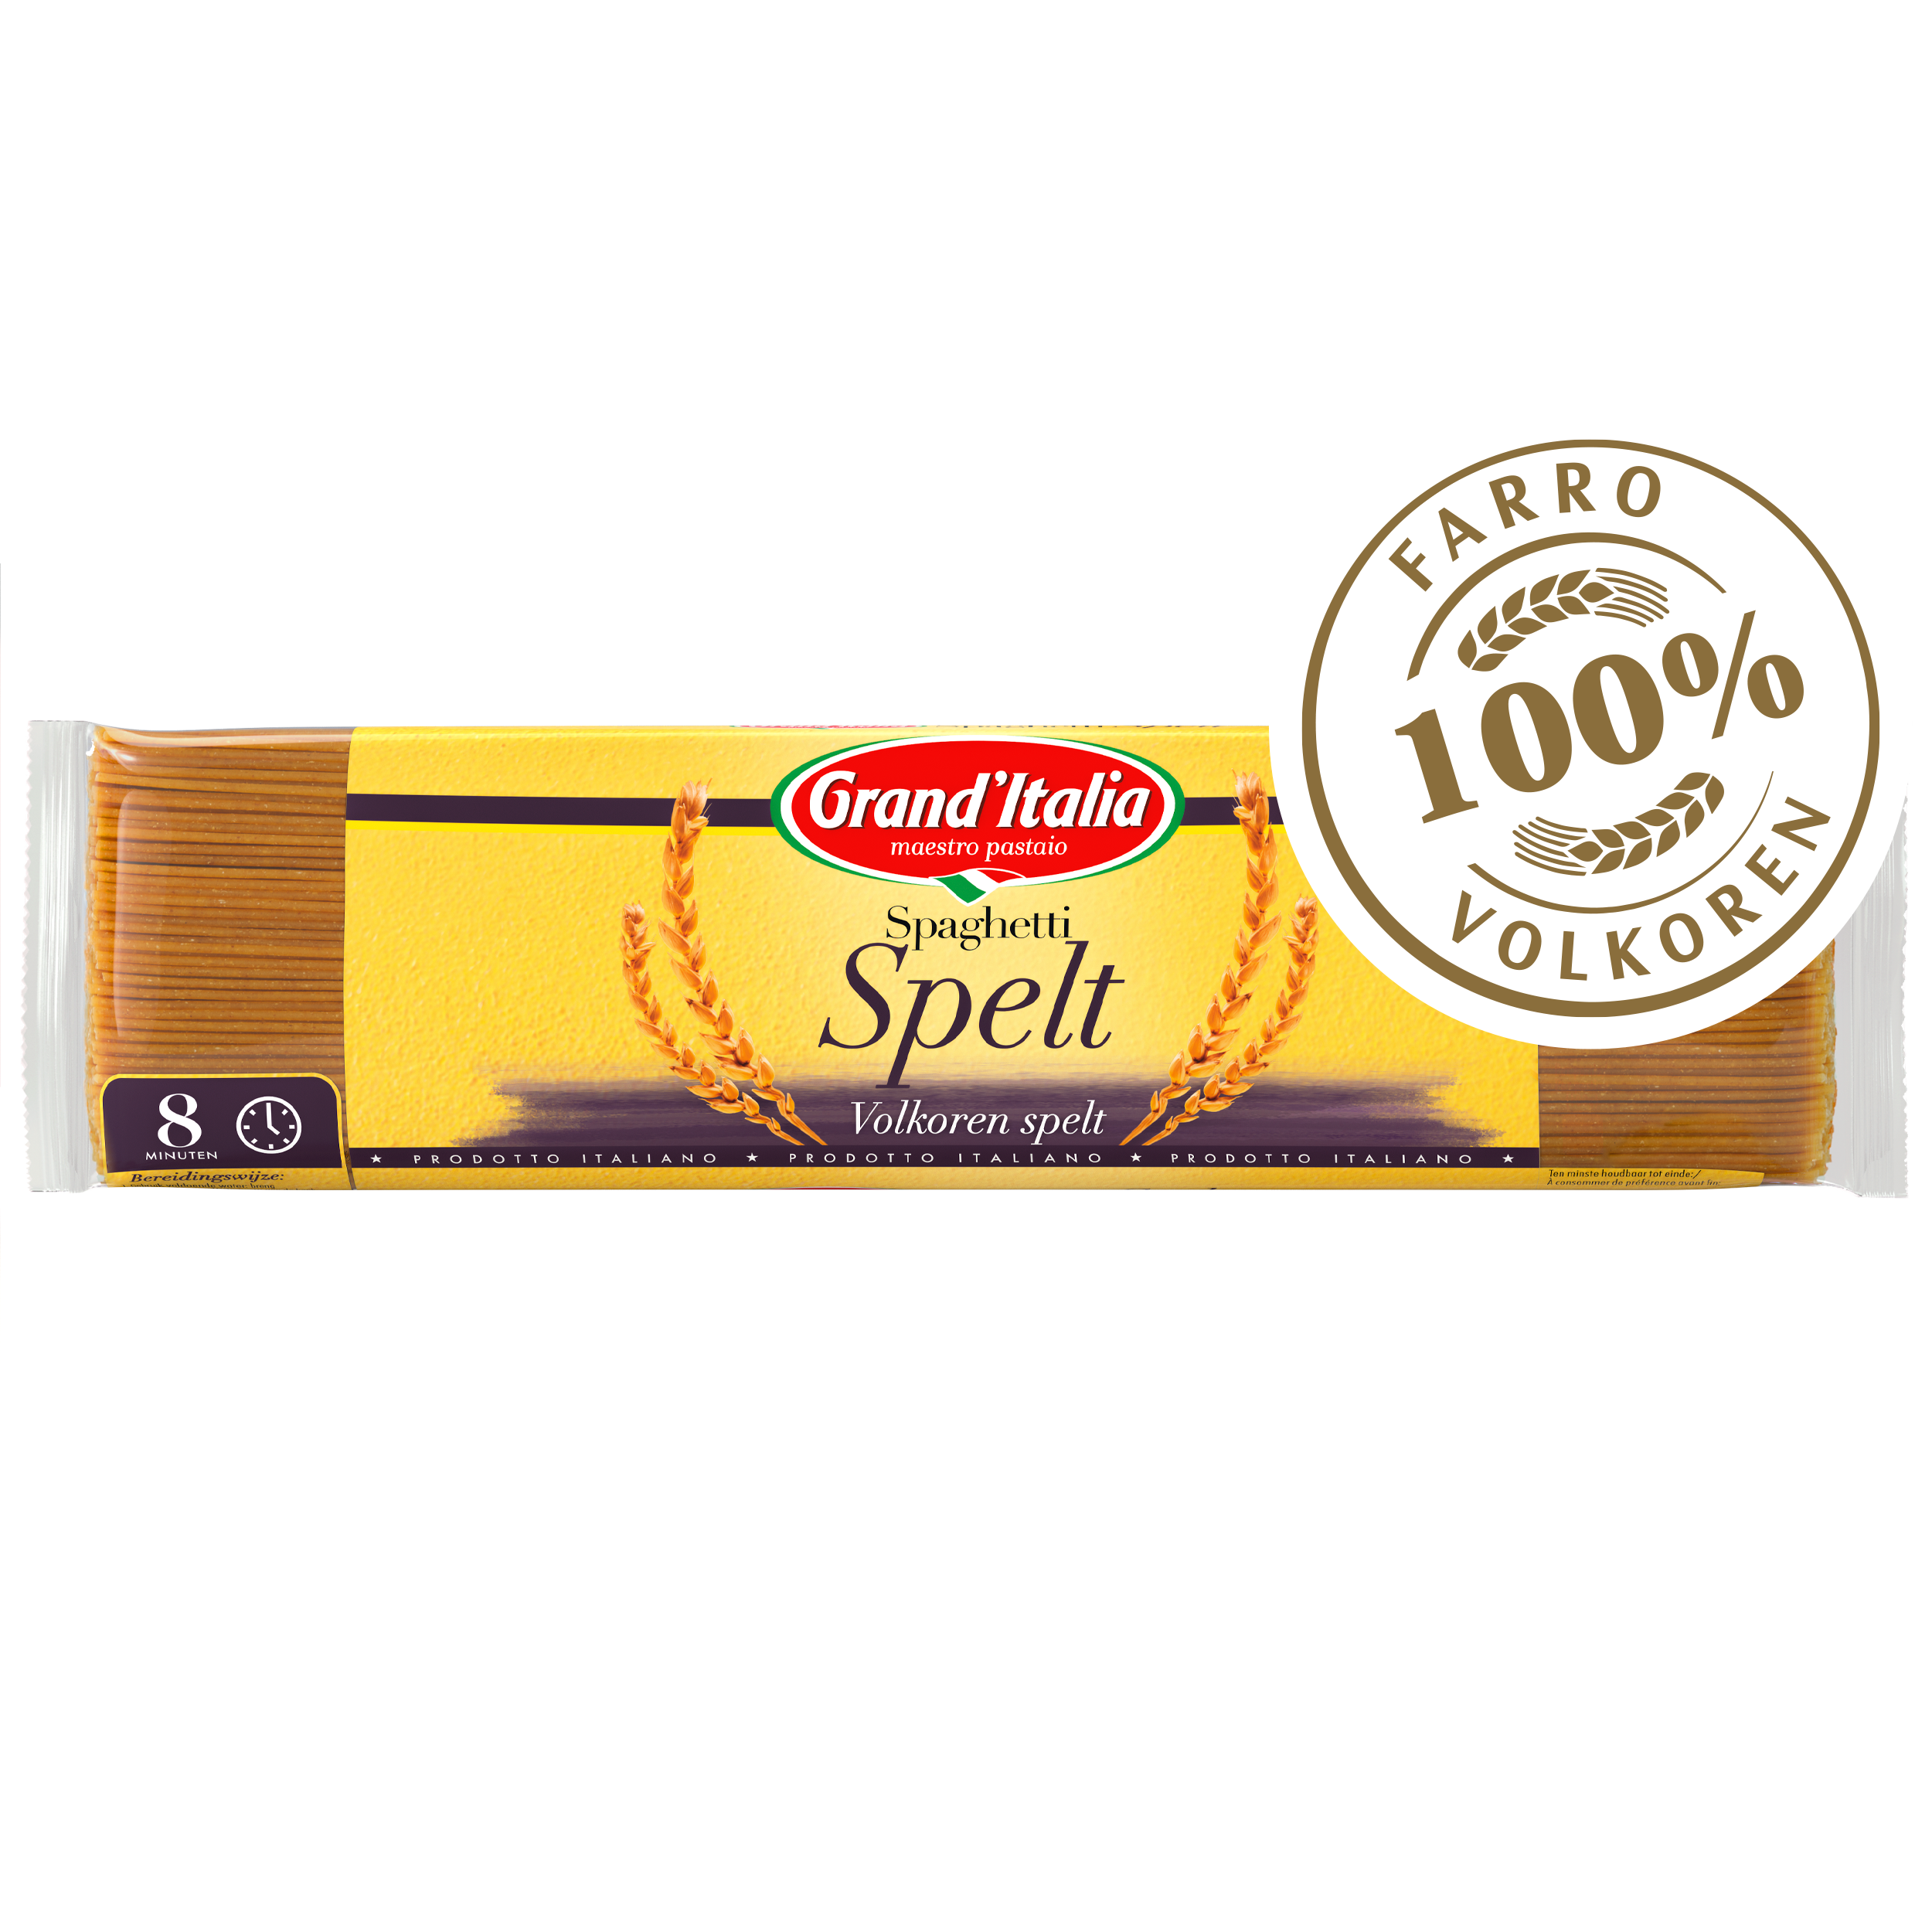 Pasta Spaghetti Spelt 500g claim Grand'Italia